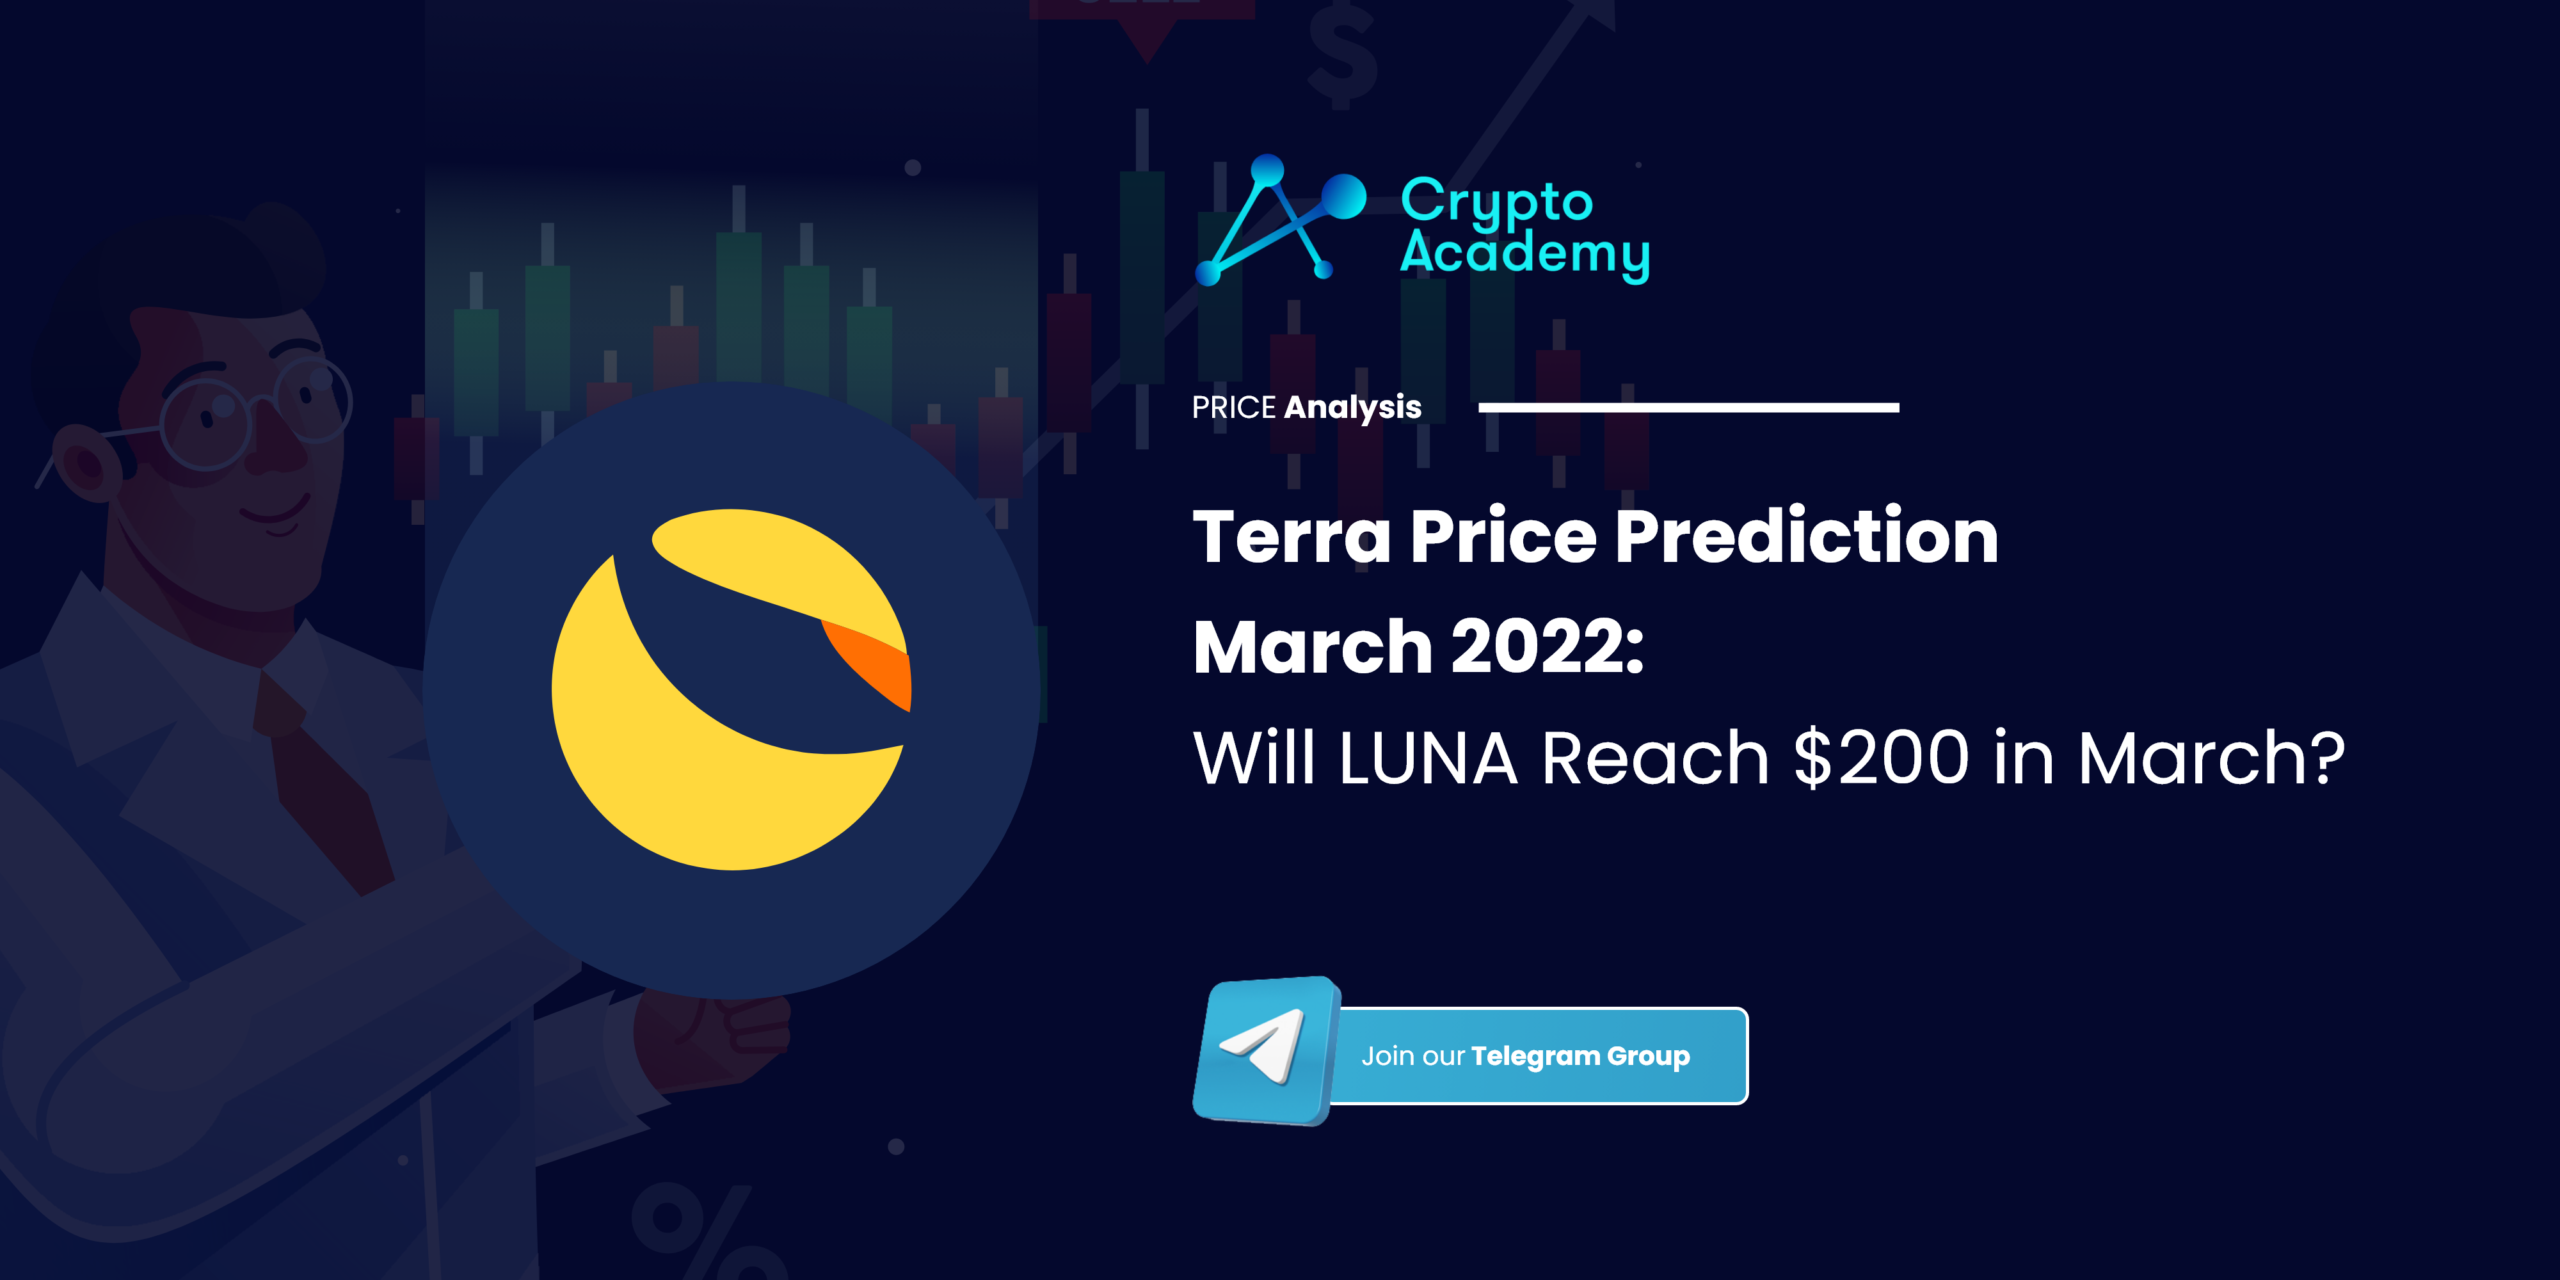 Terra Price Prediction March 2022: Will LUNA Reach $200 in March?